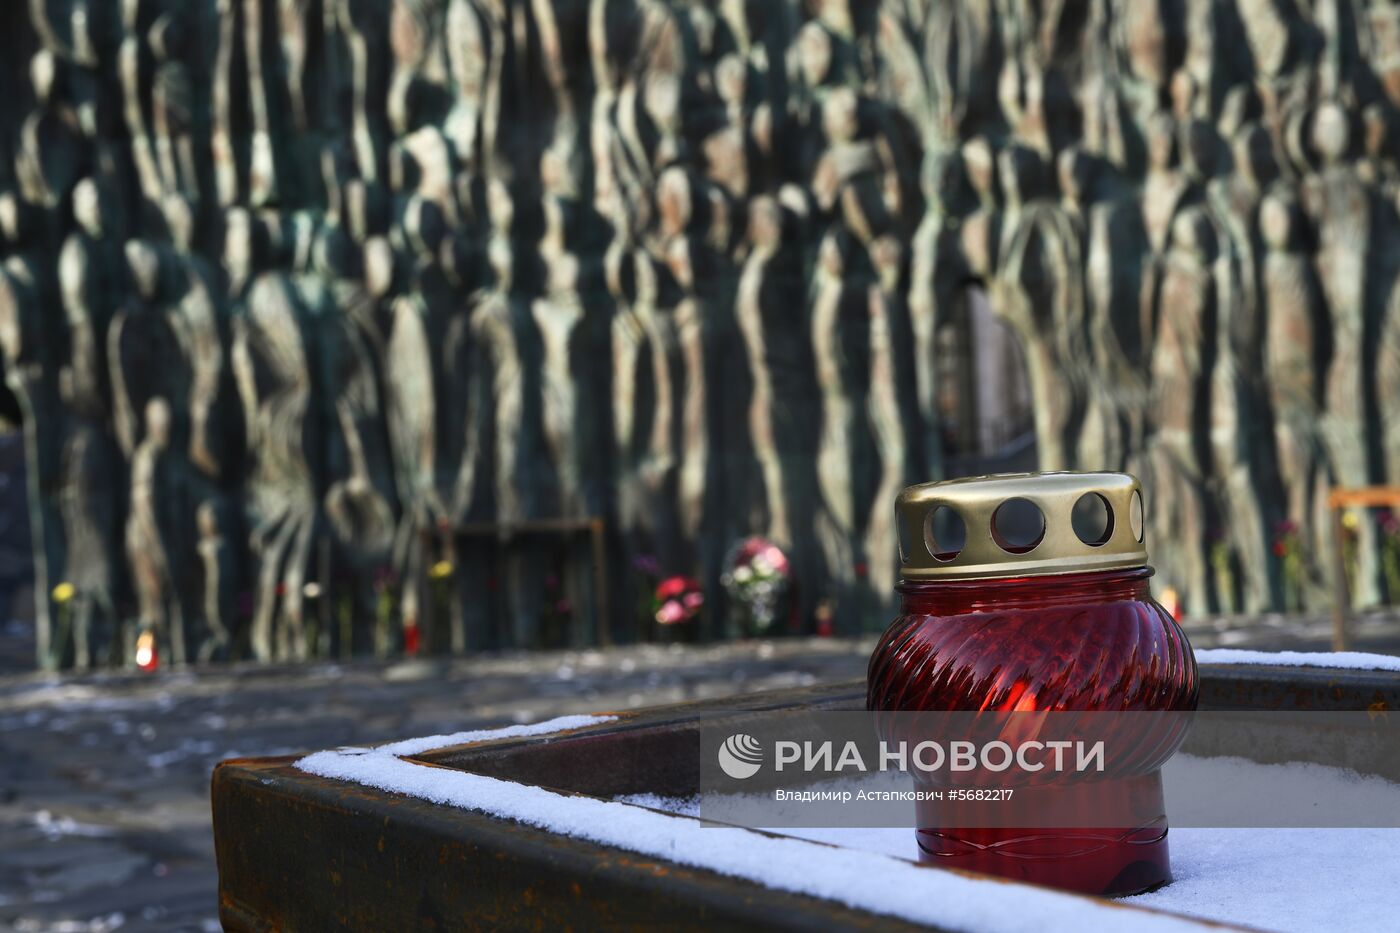 Акция "Колокол памяти" в Москве